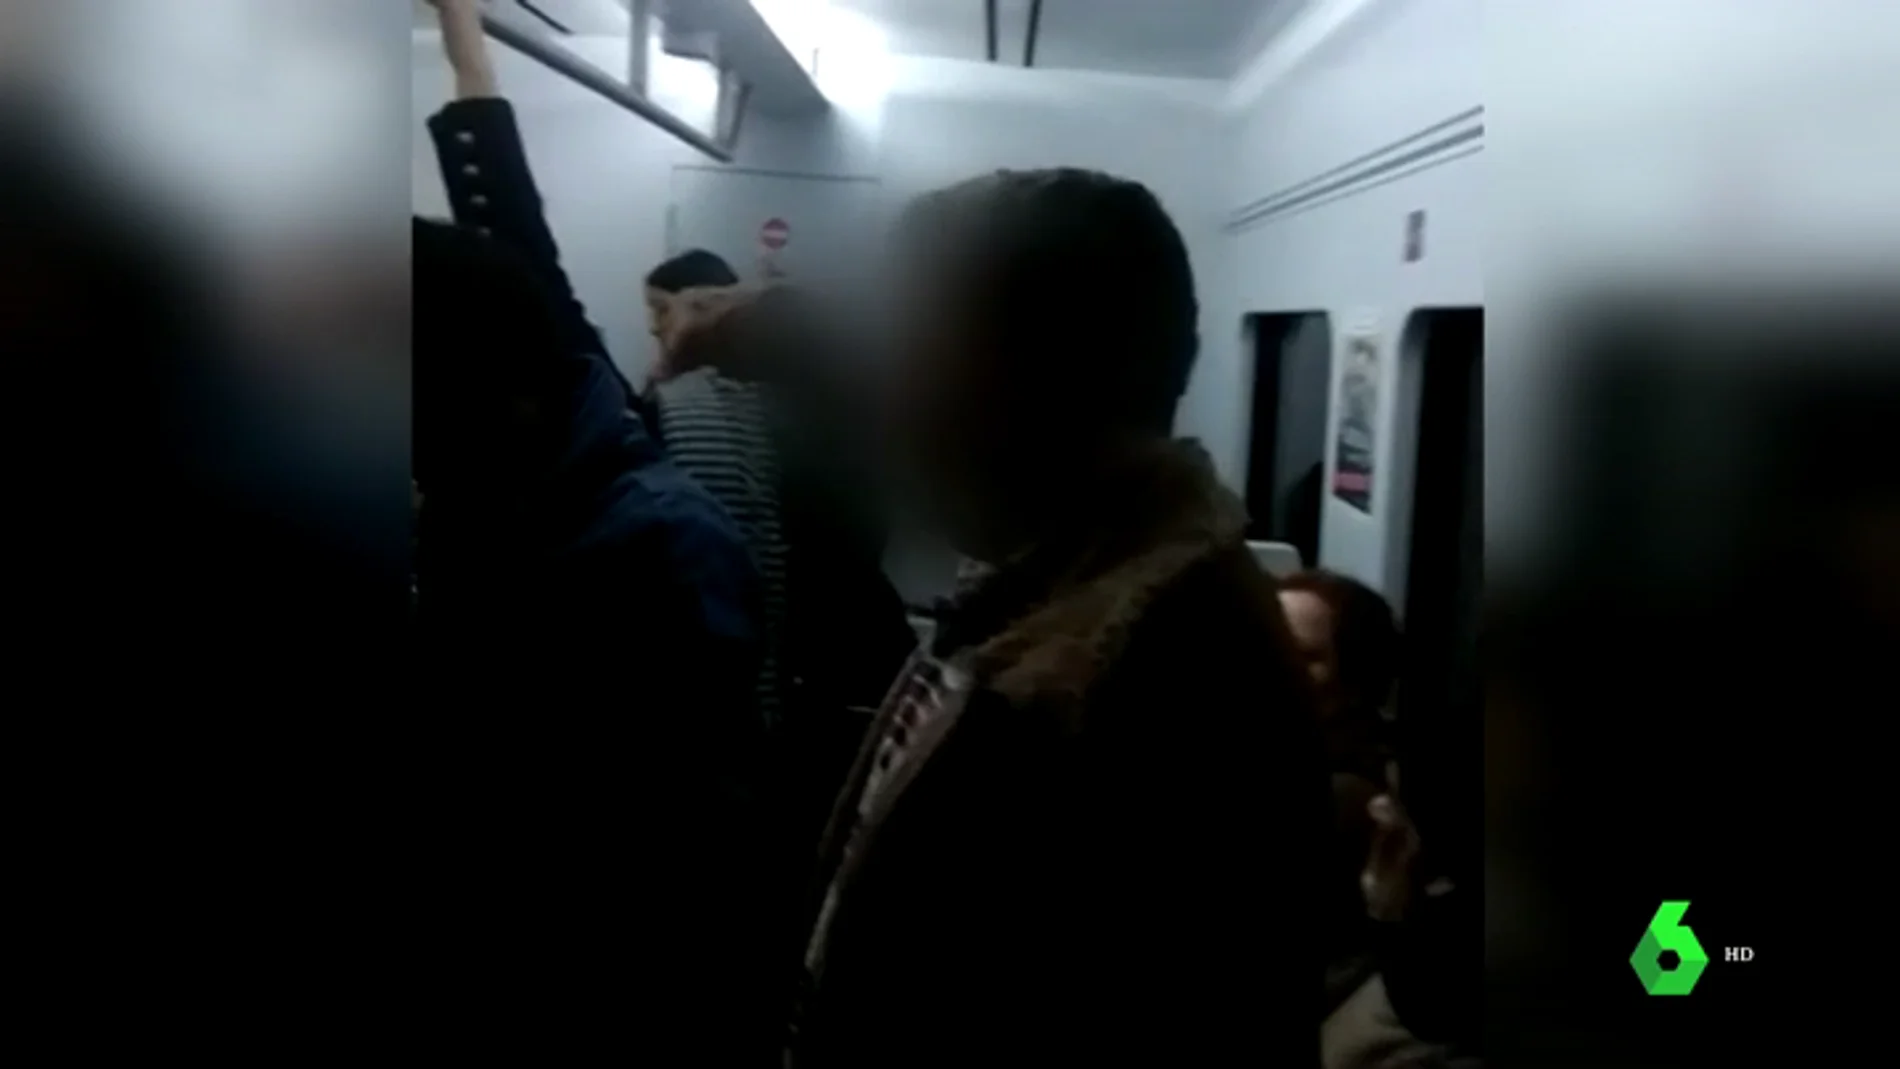 REEMPLAZO | Nuevo episodio racista en el Cercanías de Madrid: un hombre ataca a otro por ser extranjero